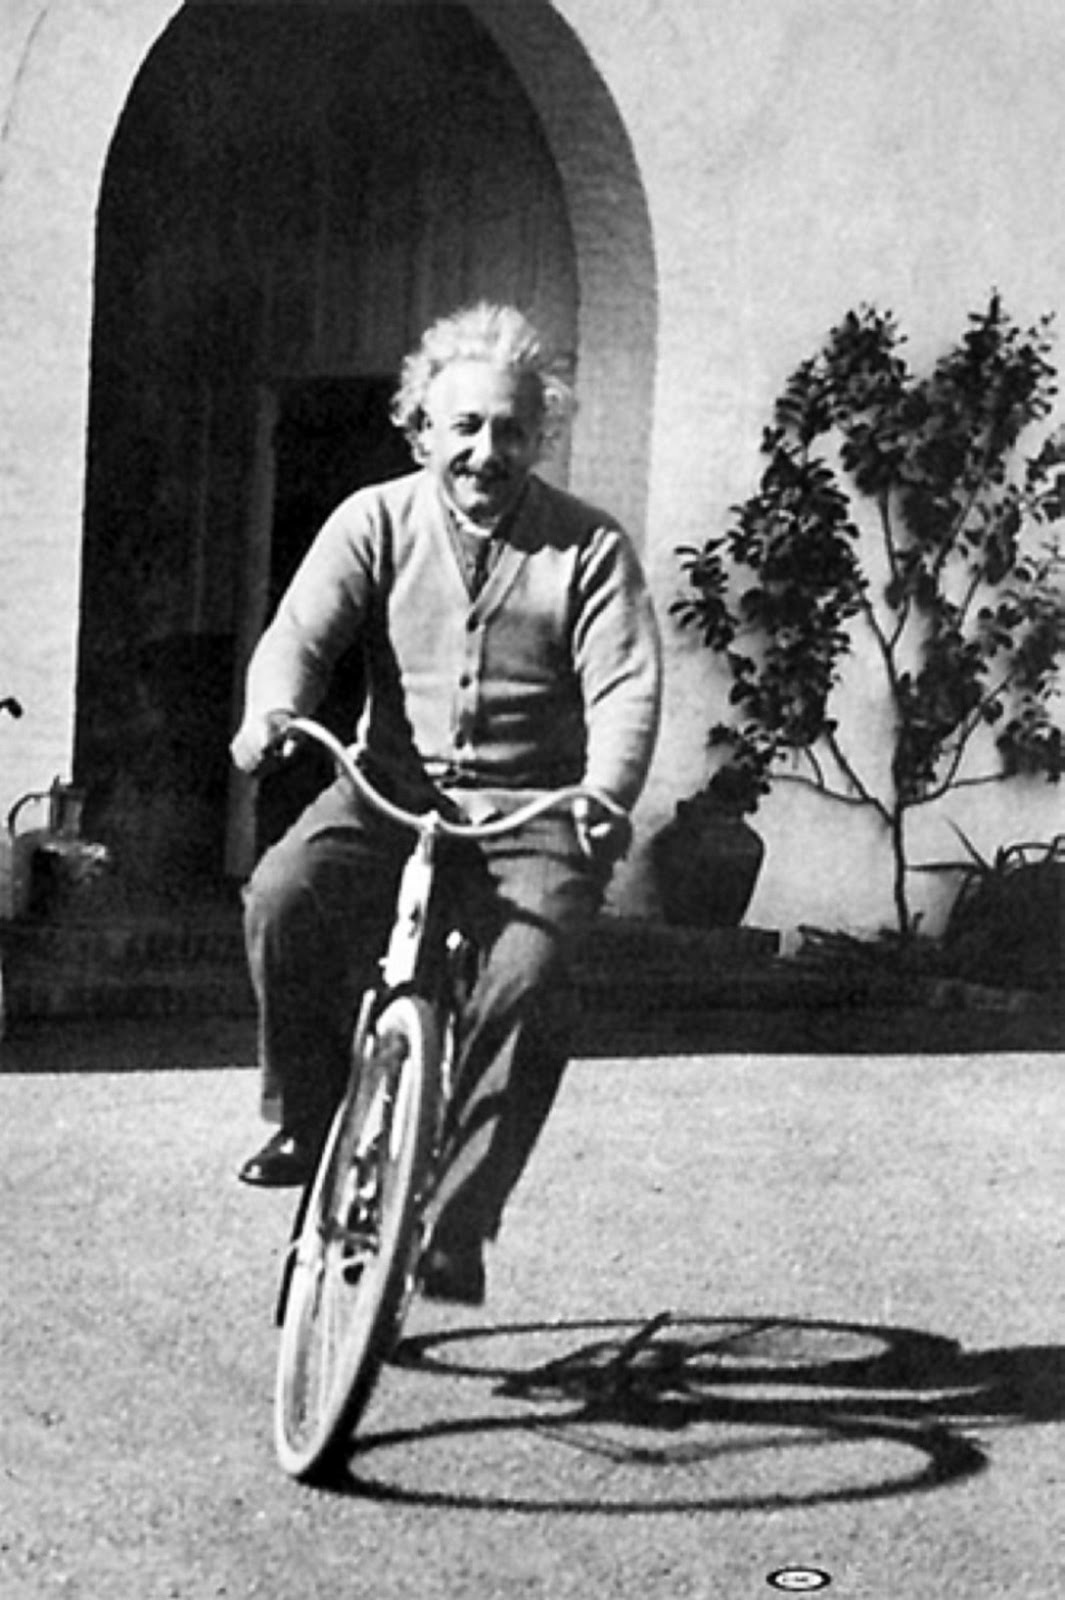 Albert Einstein Riding Bicycle, 1933 vintage everyday